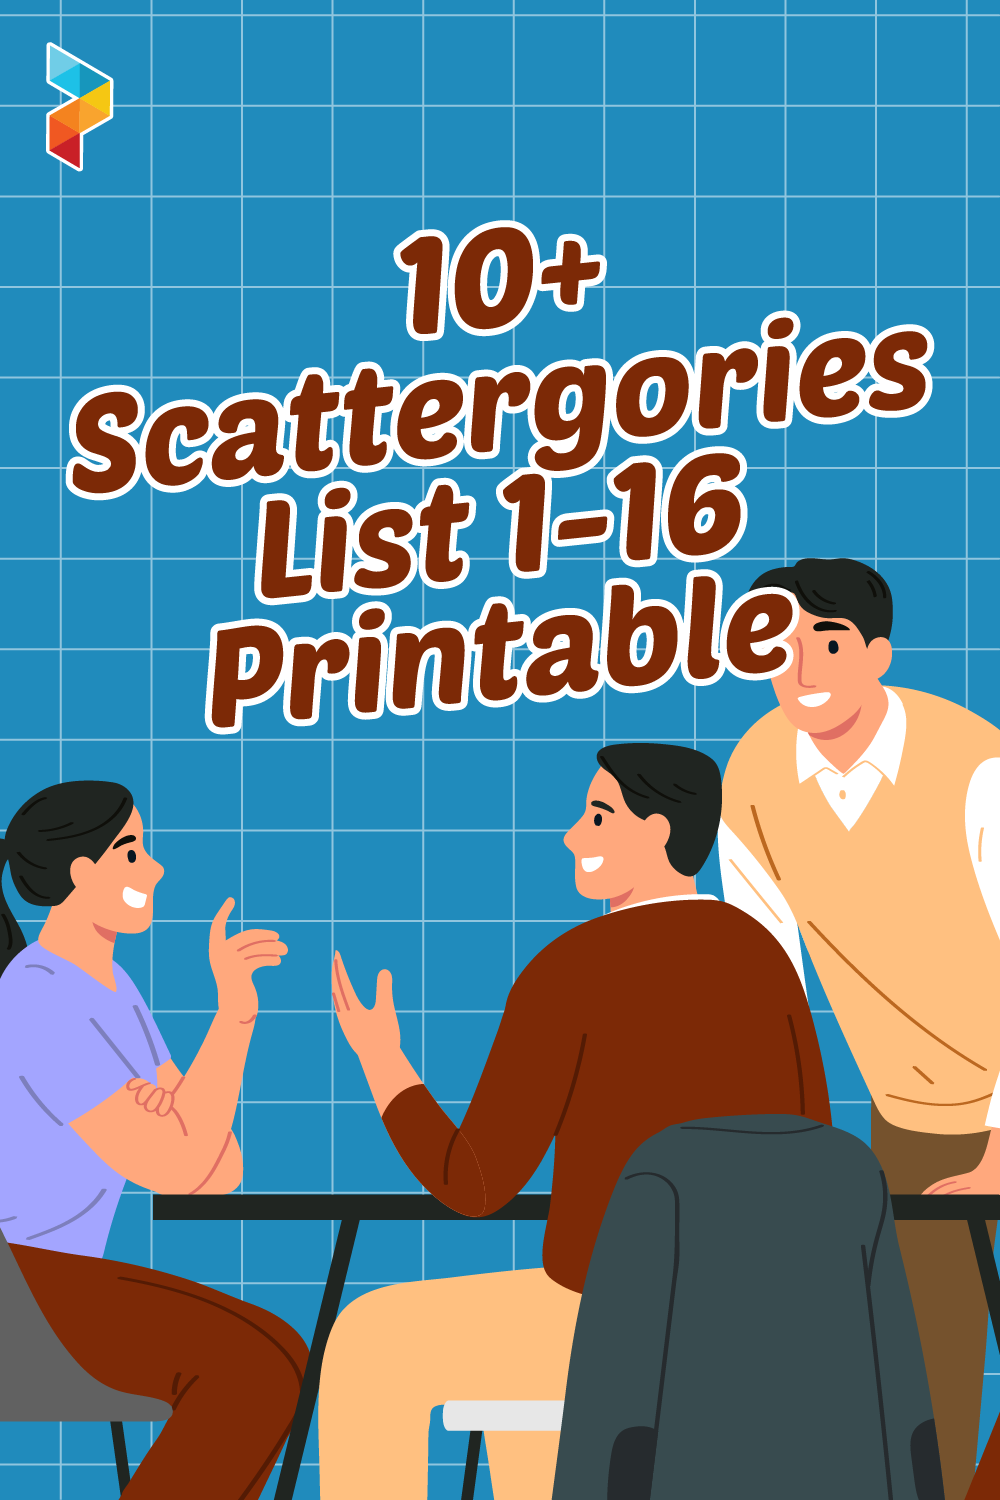 Scattergories List 1-16